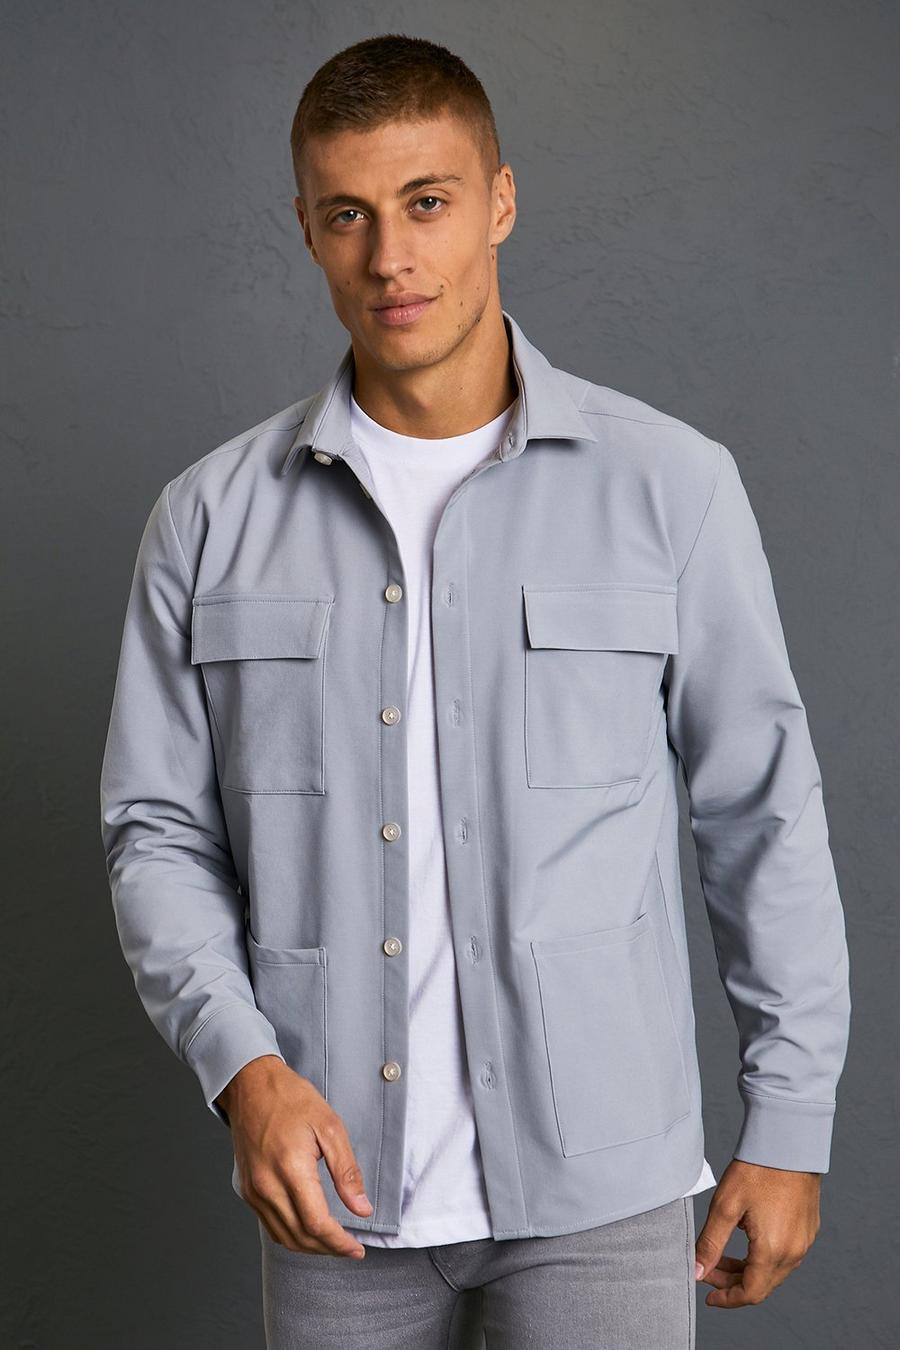 Light grey Överskjorta i fyrvägsstretch med fickor